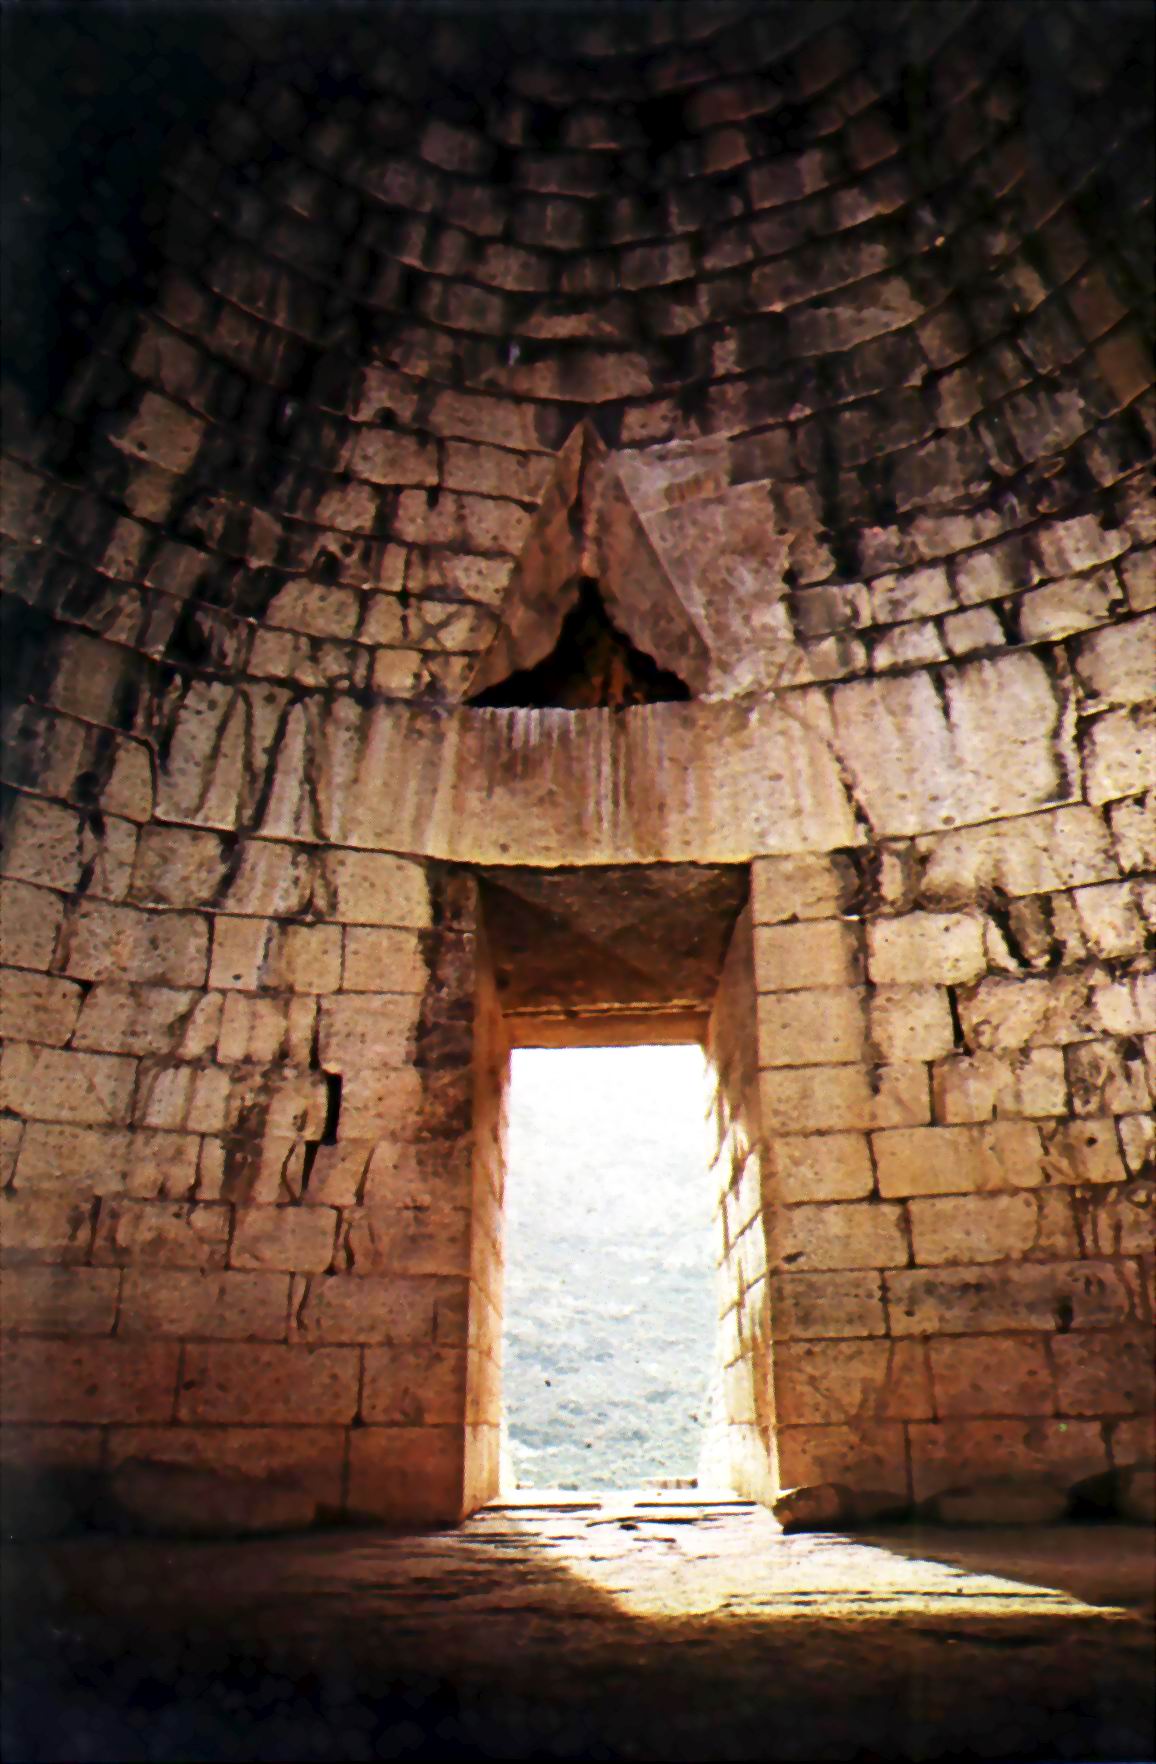 beehive mycenae tomb mycenaean tumba agamemnon interior schliemann greece atreo architecture grecia late bronze age tesoro agamenon minoan ancient famous